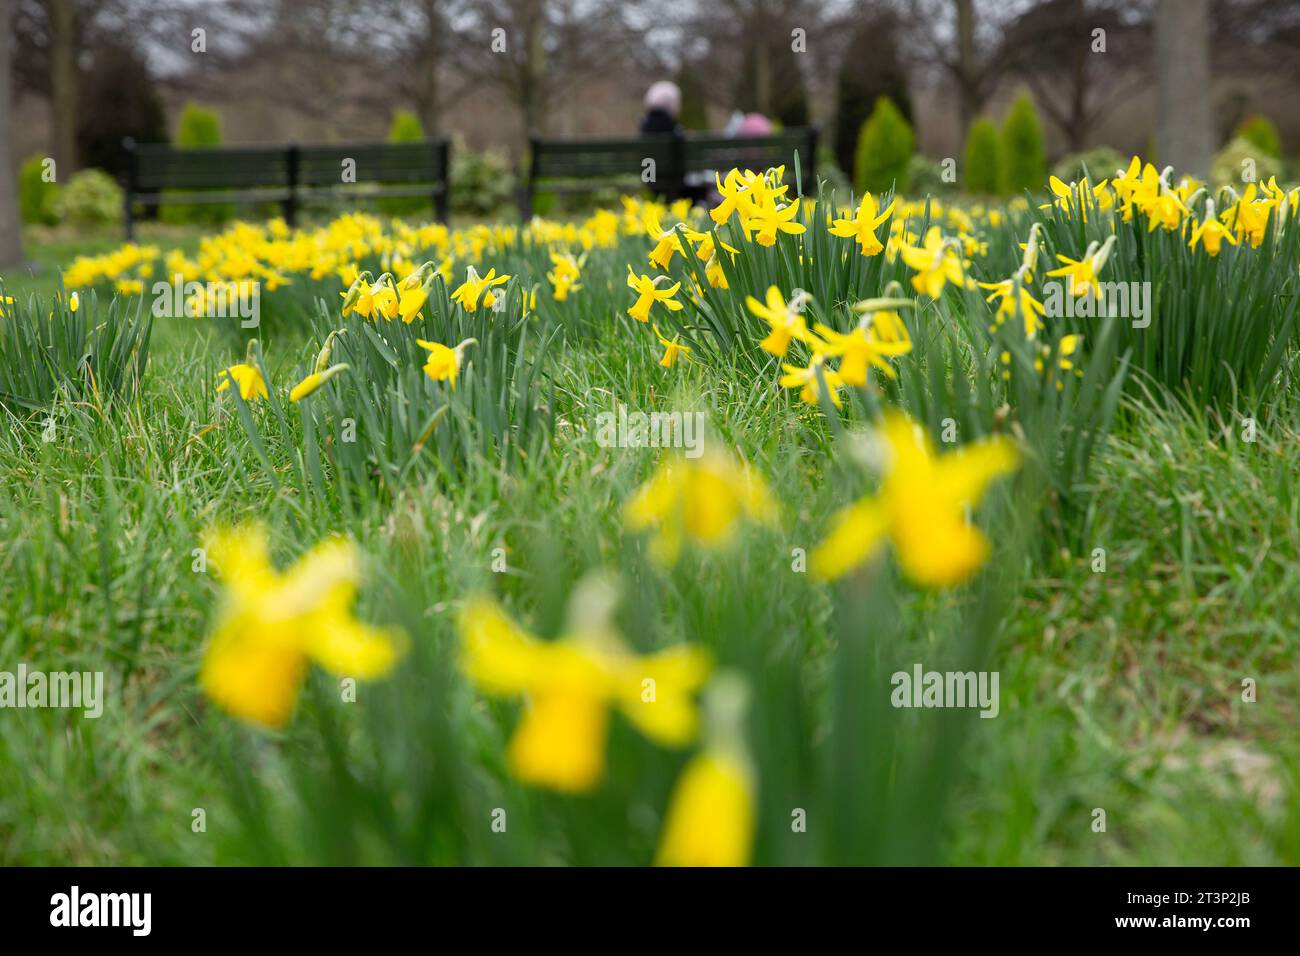 Narzissen blühen, während die Menschen ihre Zeit im Regent’s Park, London, verbringen. Stockfoto